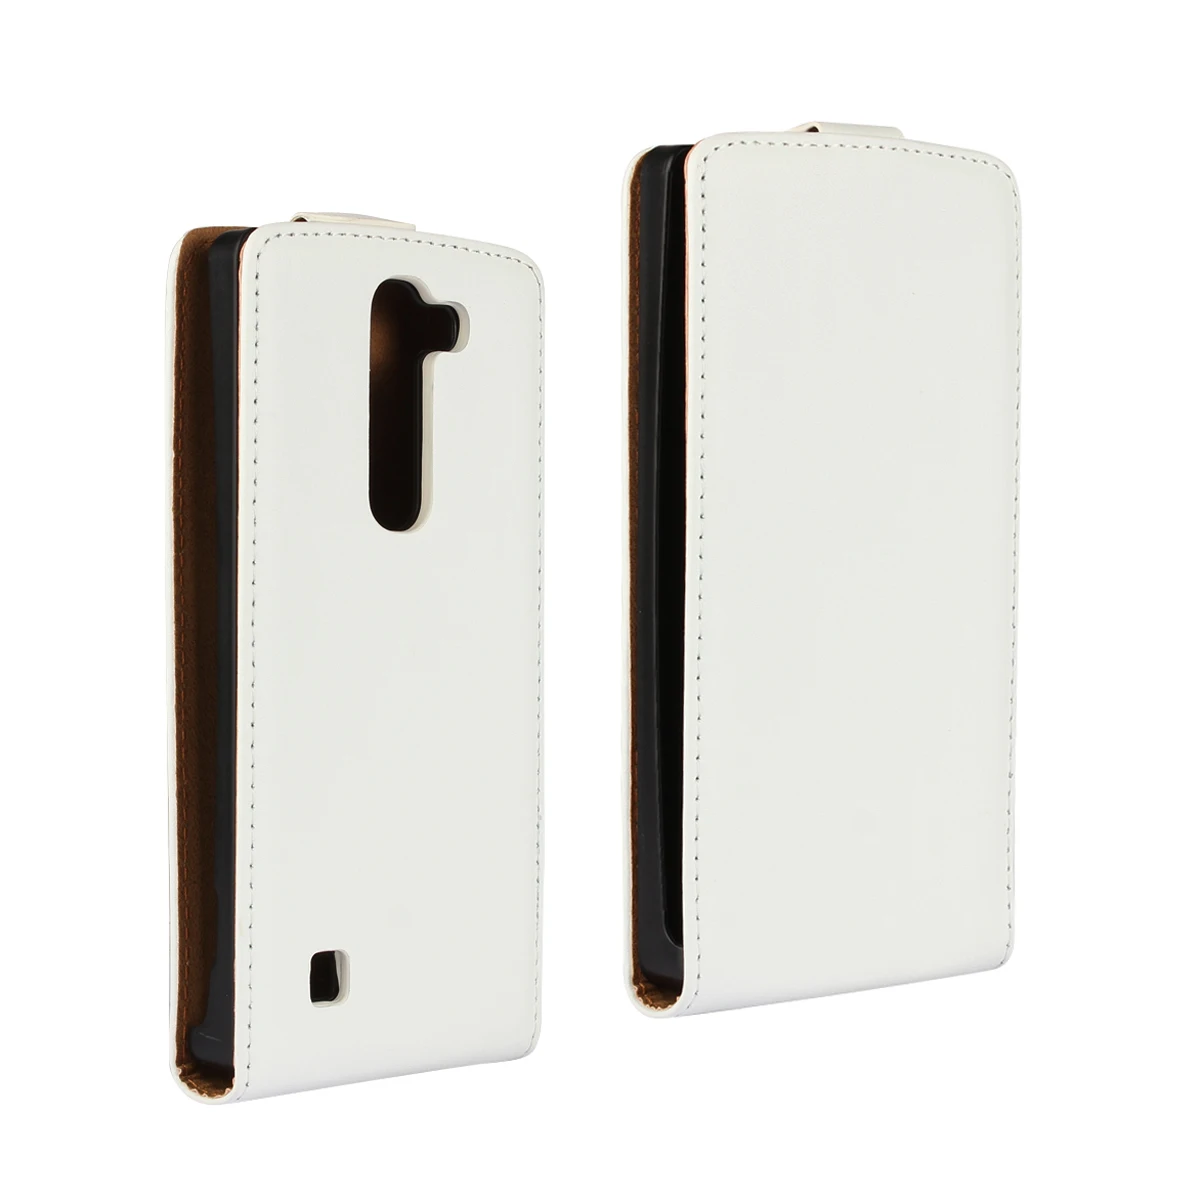 Вертикальный флип-чехол для LG Spirit LG Leon 4G LTE LG Magna G4C задняя крышка кожаный чехол для LG Spirit чехол для телефона s сумка аксессуары - Цвет: Белый